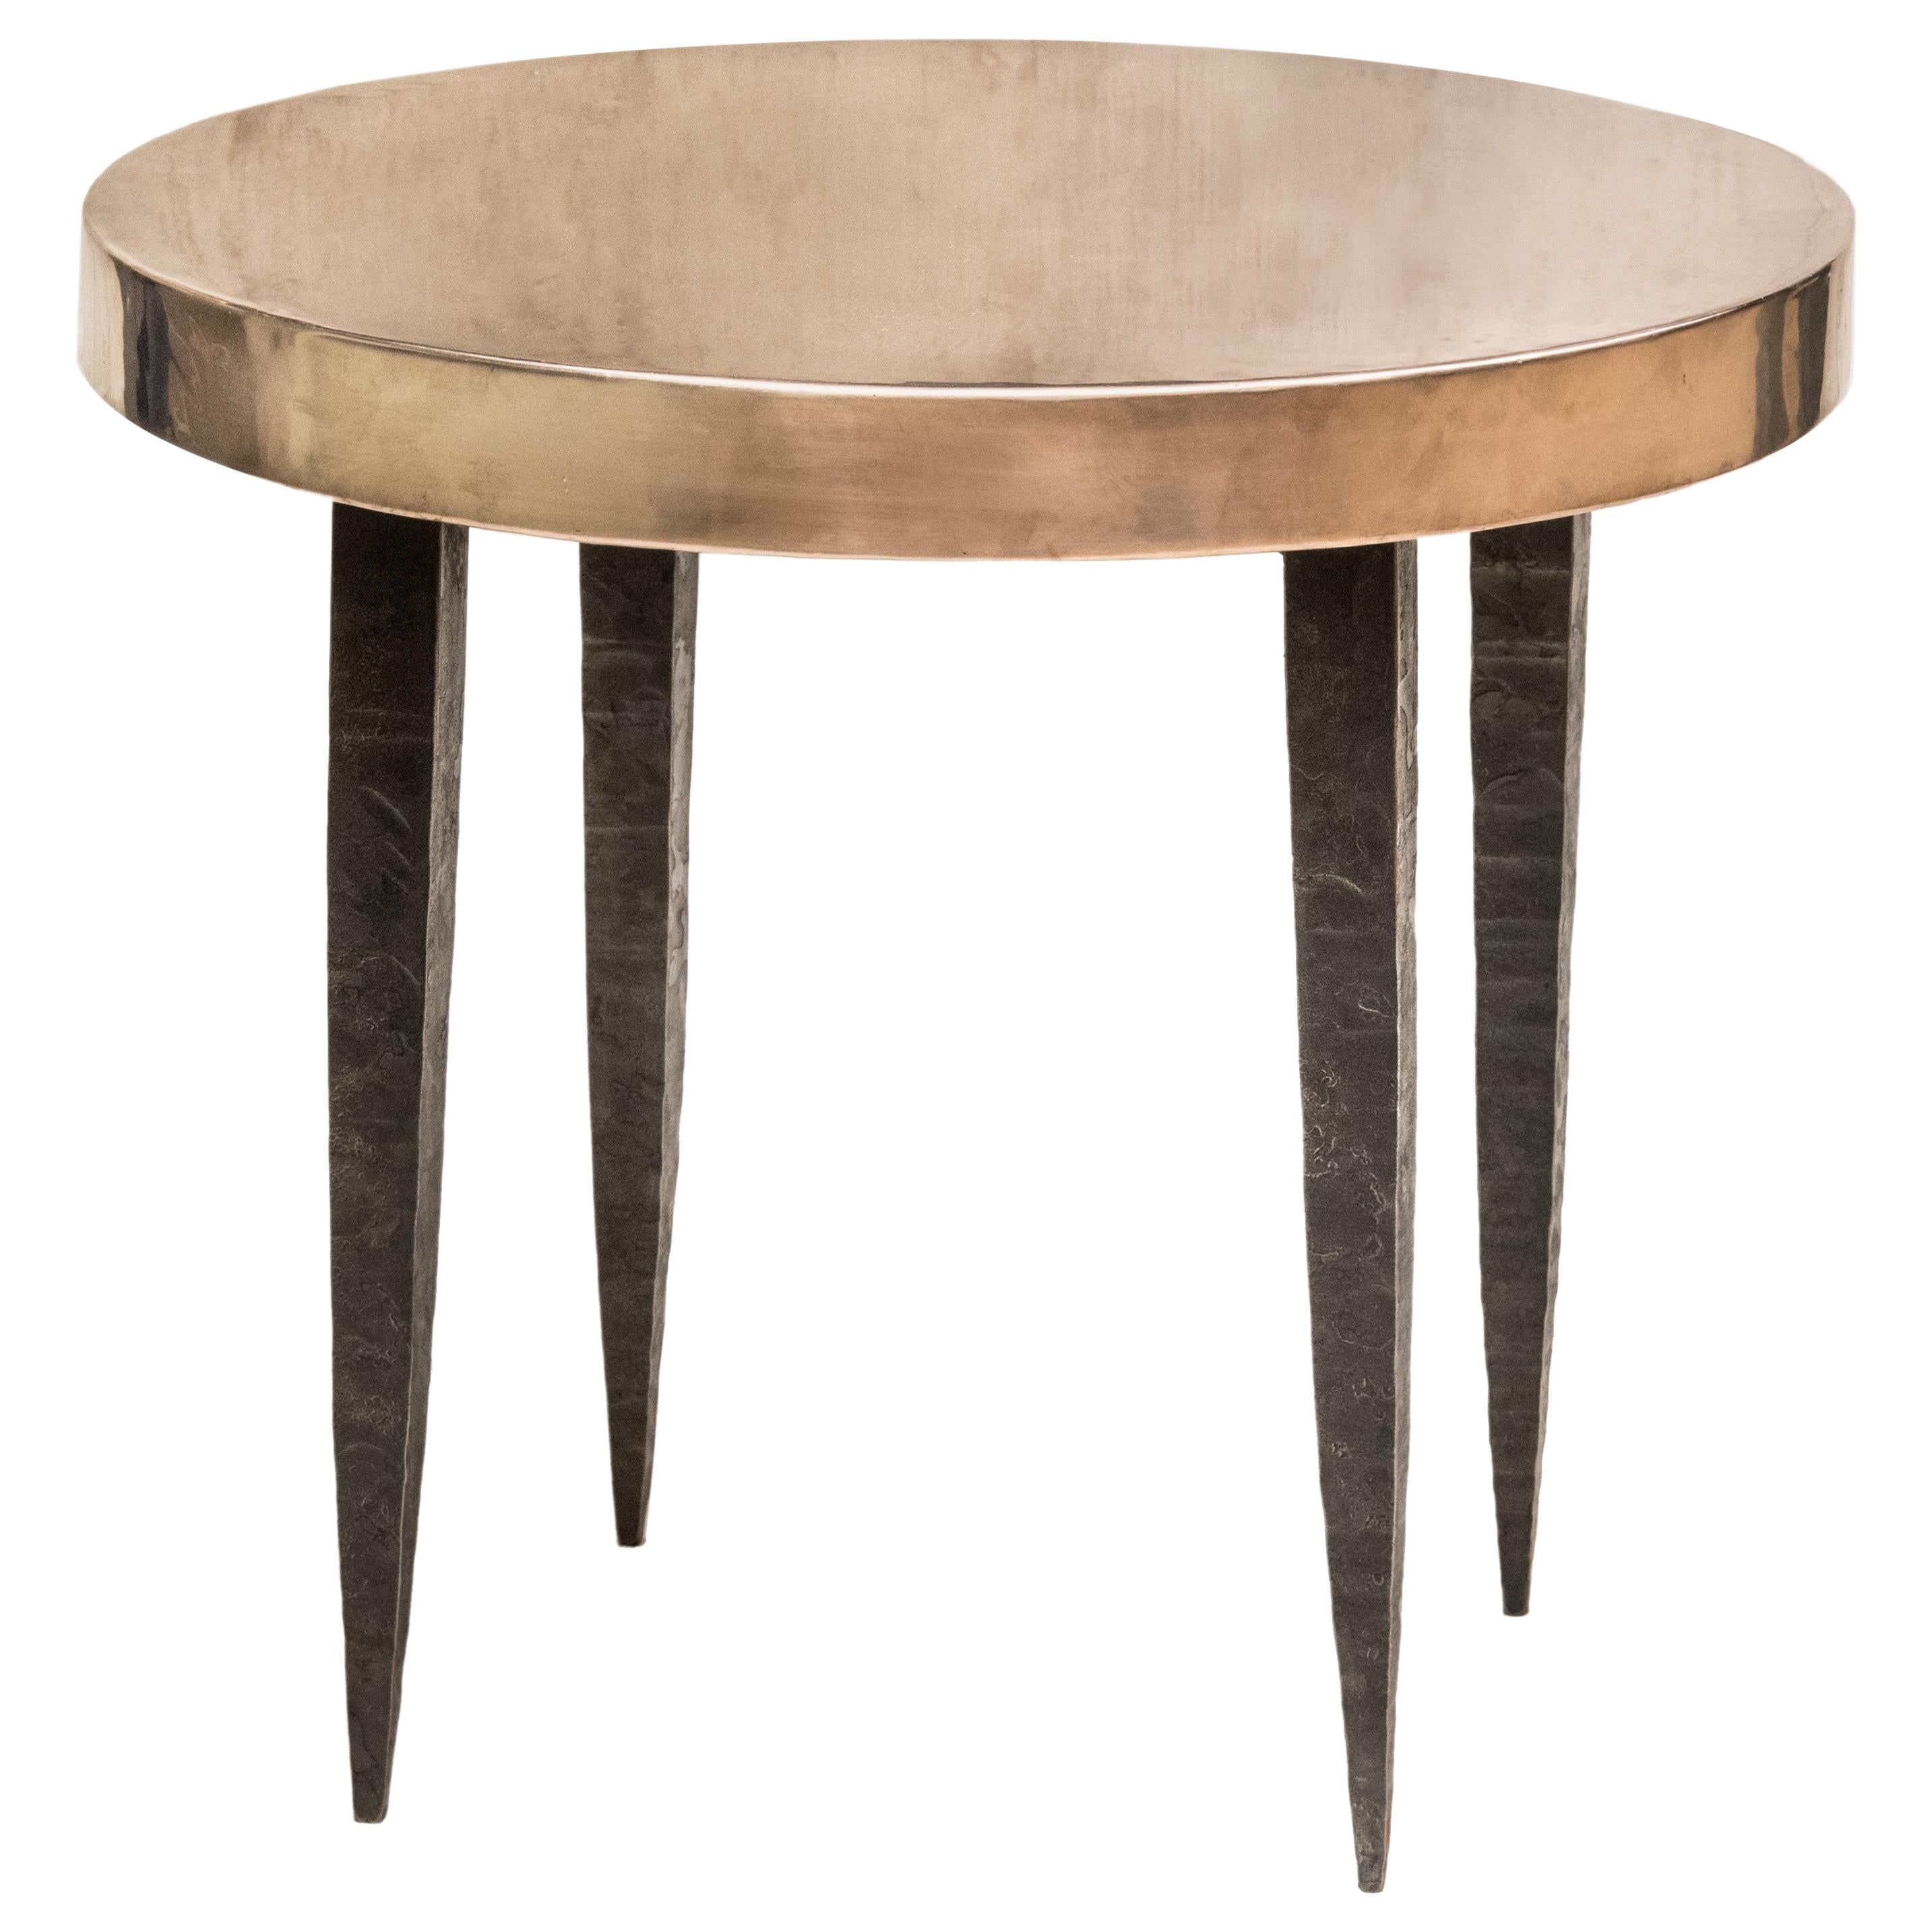 Table d'appoint ronde en bronze avec pieds en acier effilés